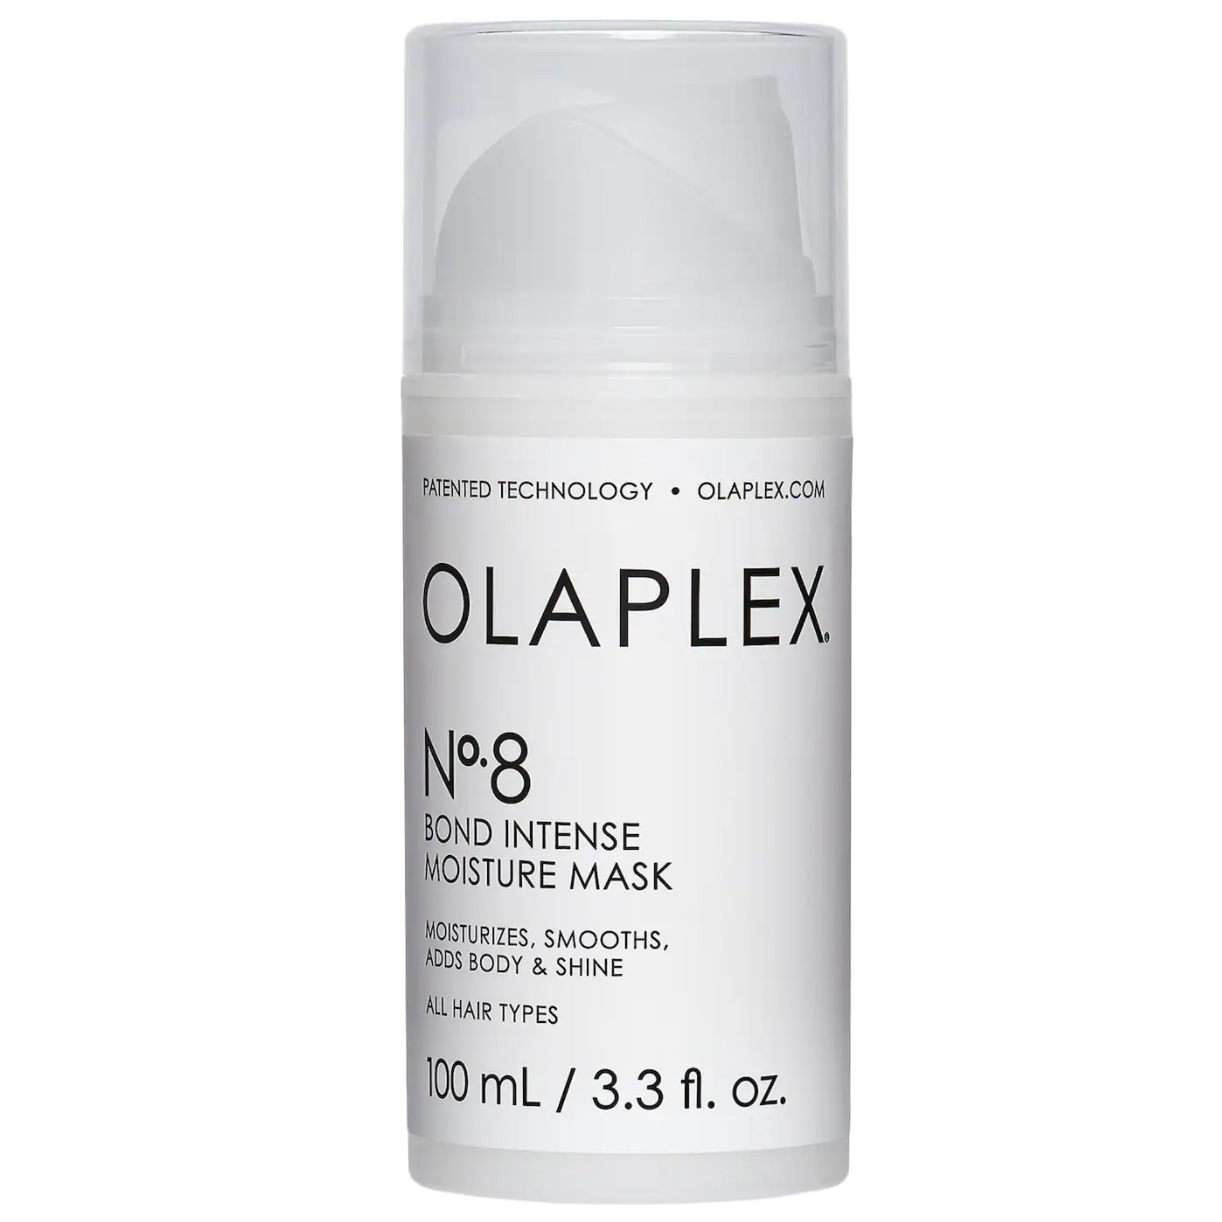 olaplex no. 8 moisture mask review